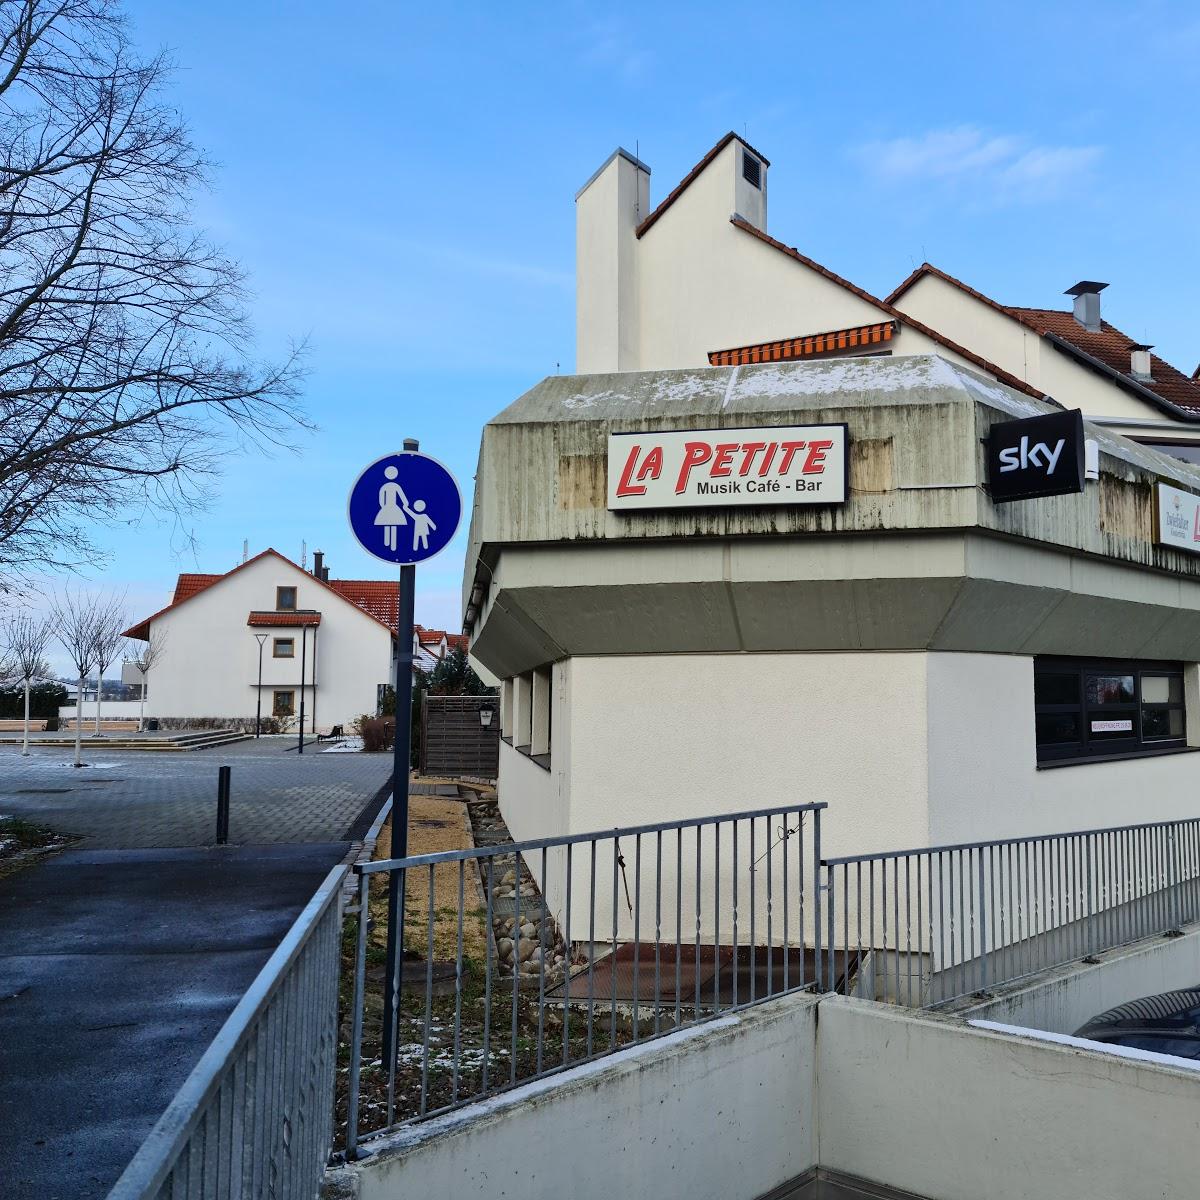 Restaurant "La Petite" in  Mössingen